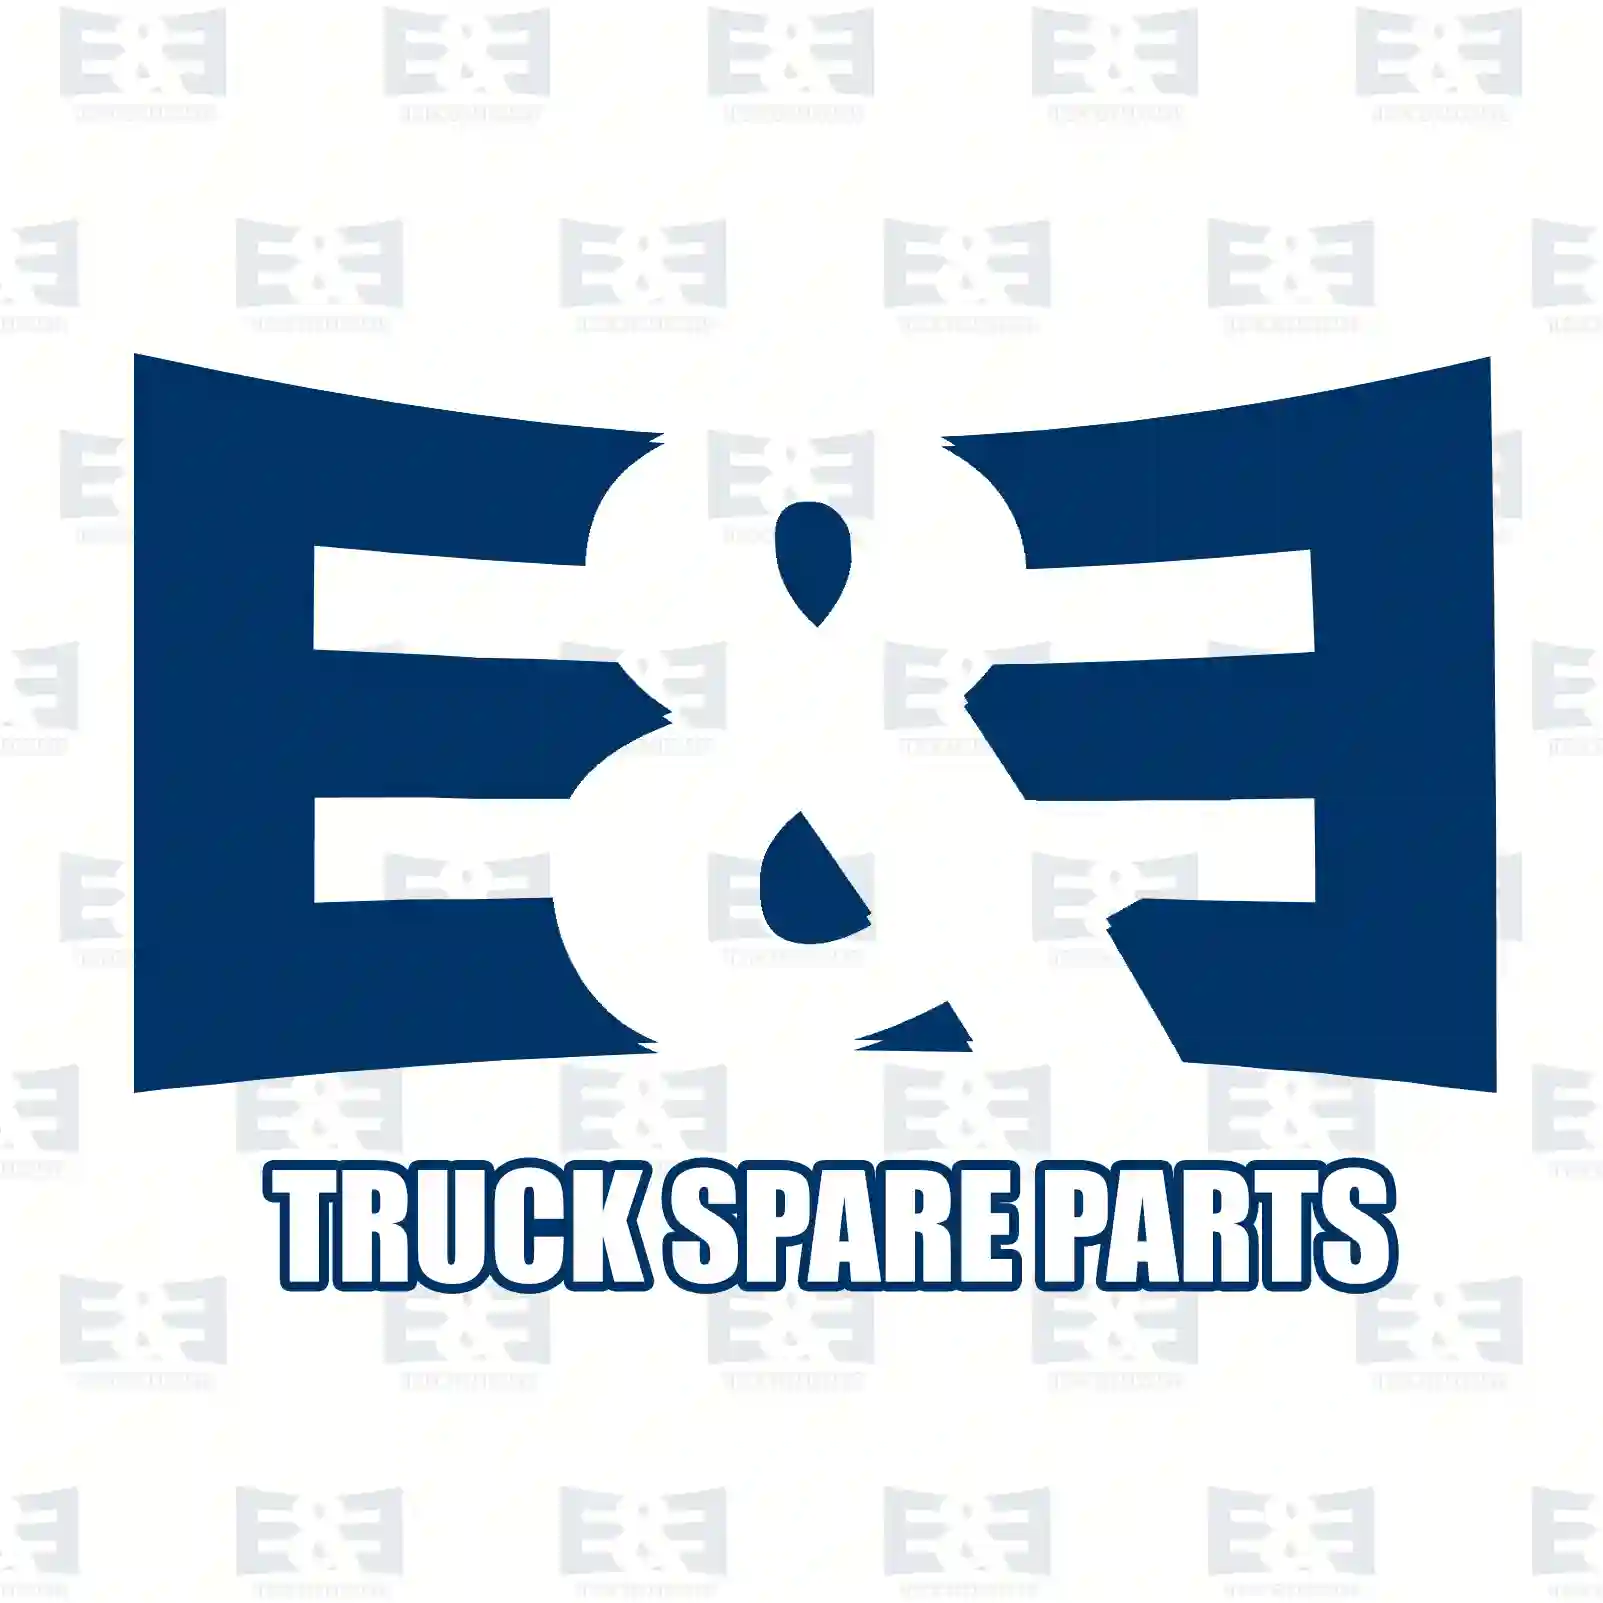 Console, cabin shock absorber, 2E2275424, 1075128, 1076698, 8142505 ||  2E2275424 E&E Truck Spare Parts | Truck Spare Parts, Auotomotive Spare Parts Console, cabin shock absorber, 2E2275424, 1075128, 1076698, 8142505 ||  2E2275424 E&E Truck Spare Parts | Truck Spare Parts, Auotomotive Spare Parts